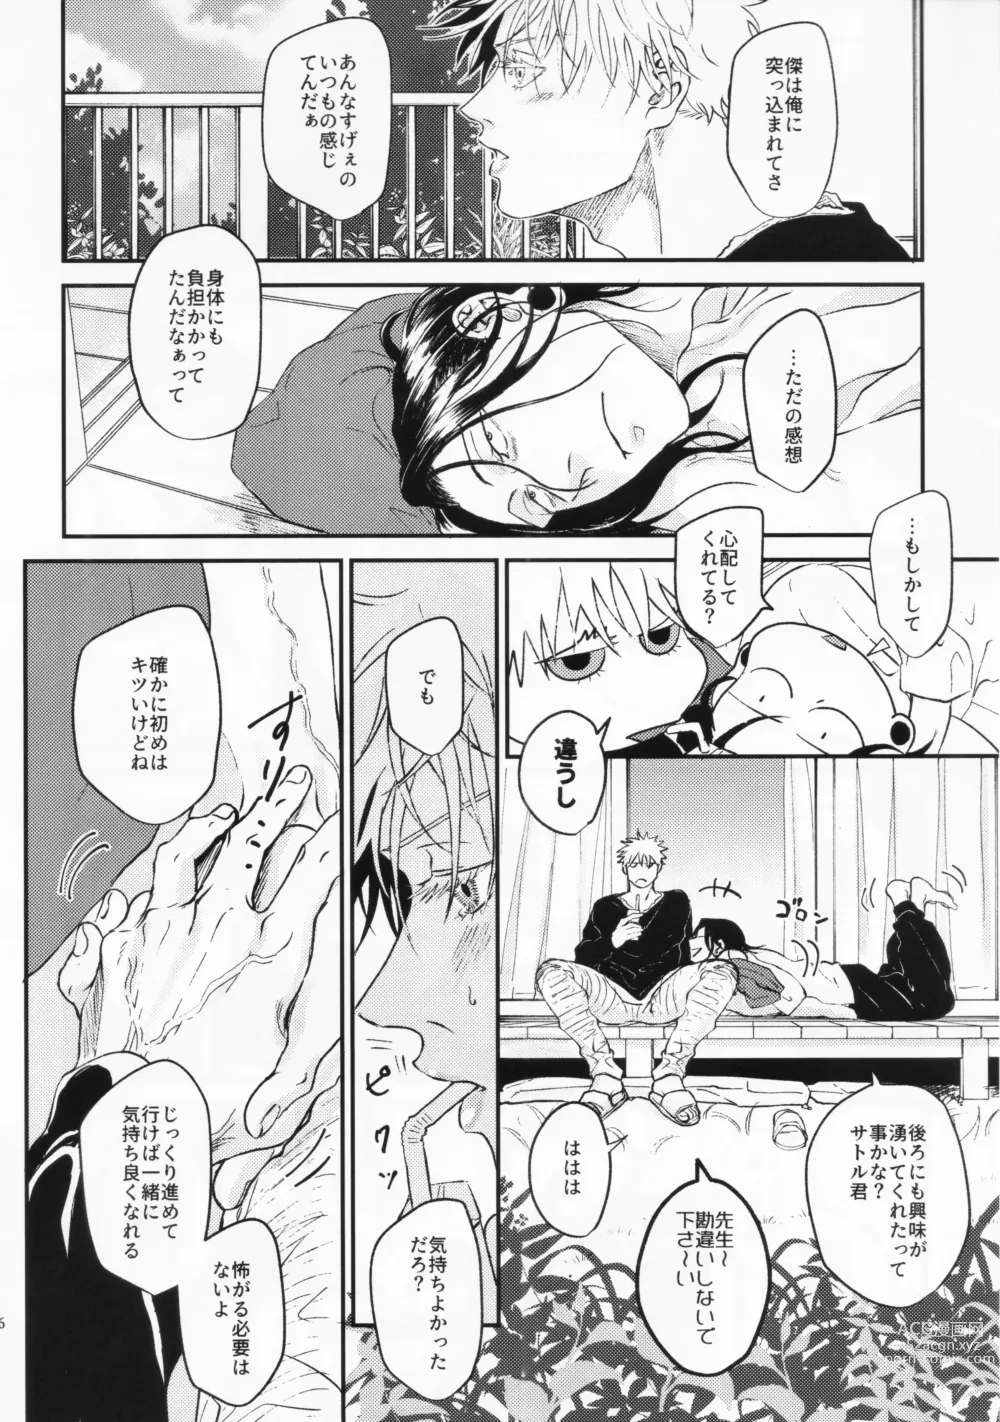 Page 43 of doujinshi Surussho.